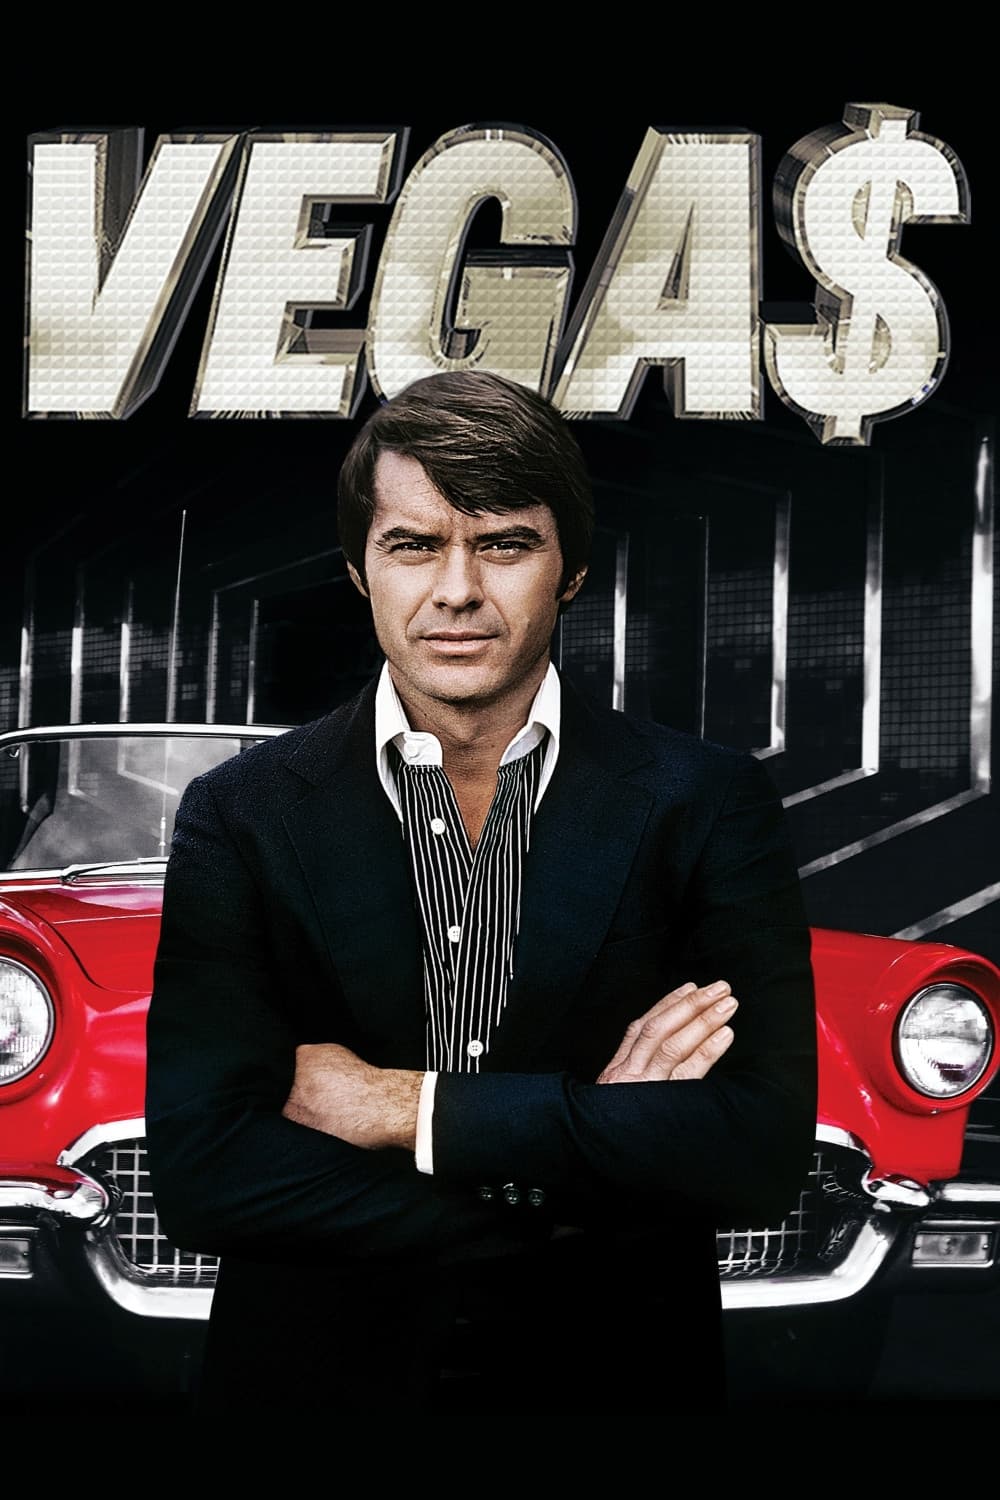 Vegas (1978)